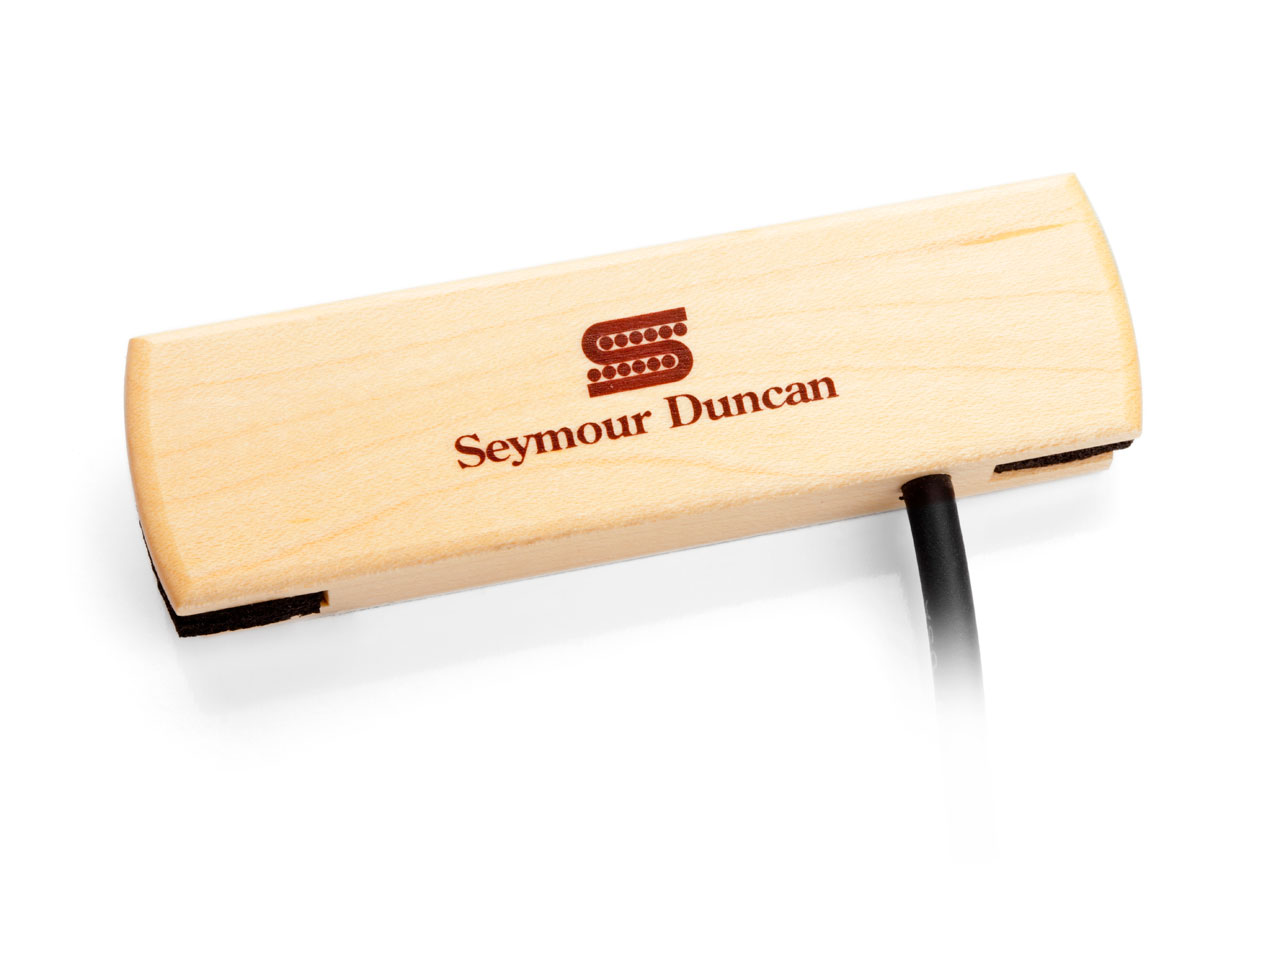 Seymour Duncan(セイモアダンカン) Woody SC [SA-3SC] (アコースティックギター用ピックアップ)